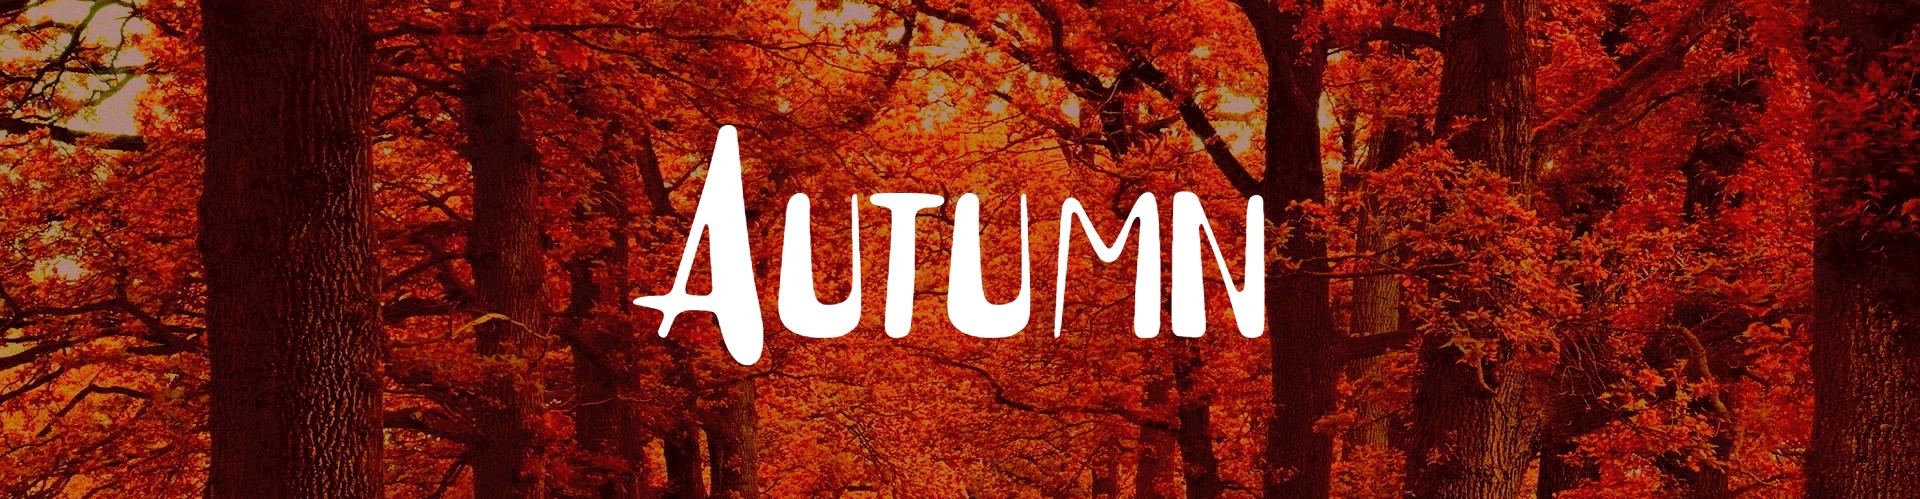 Autumn -winter edition-